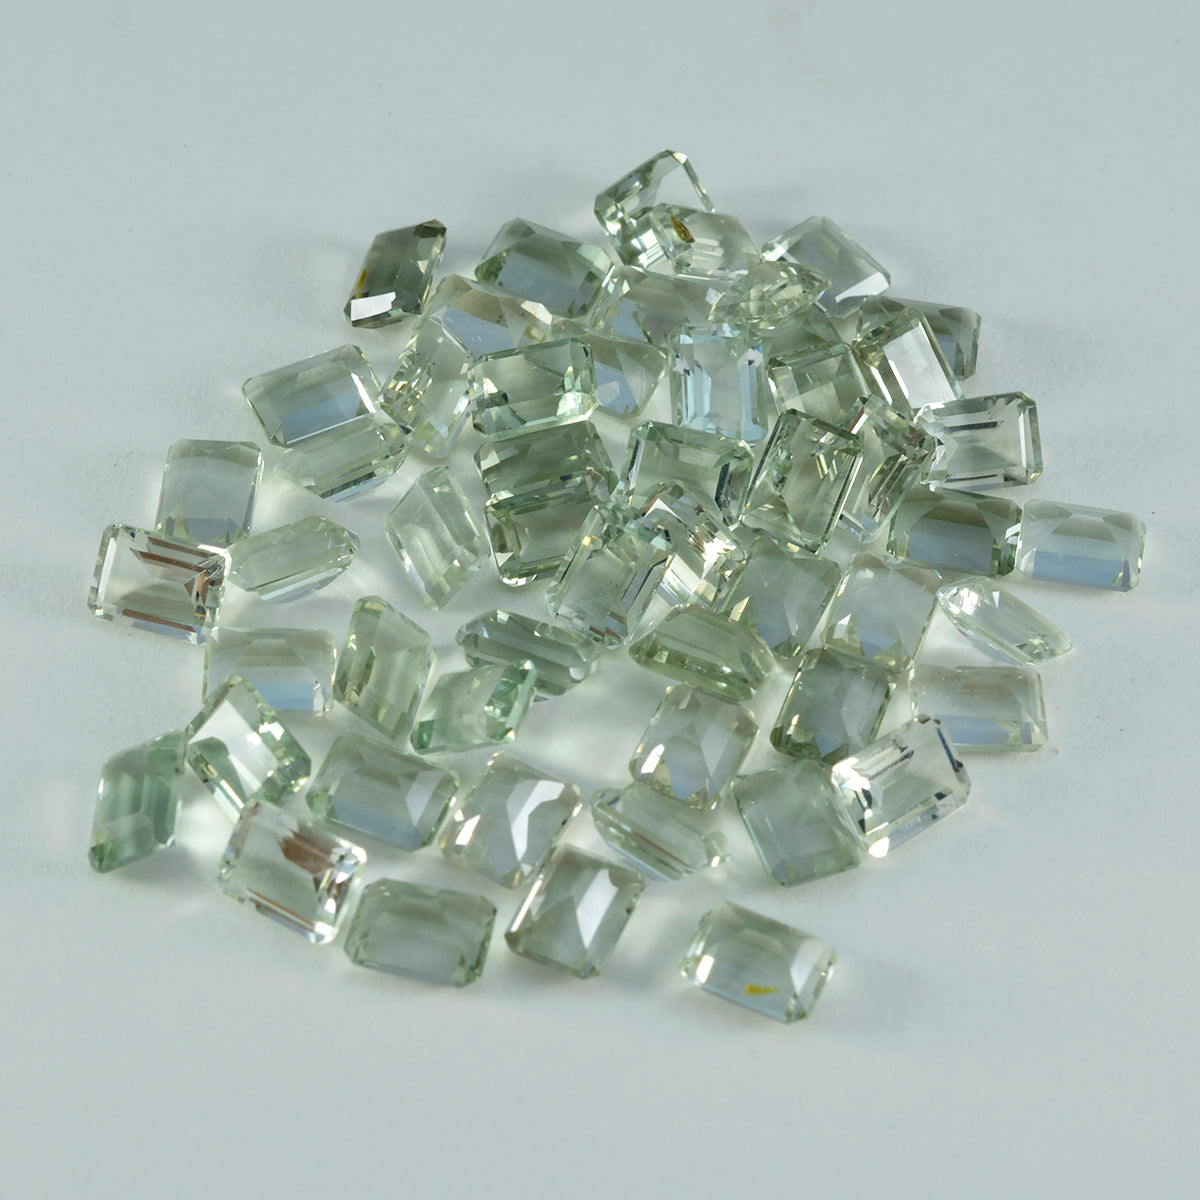 riyogems 1 шт., зеленый аметист, ограненный 3х5 мм, восьмиугольная форма, красивые качественные драгоценные камни